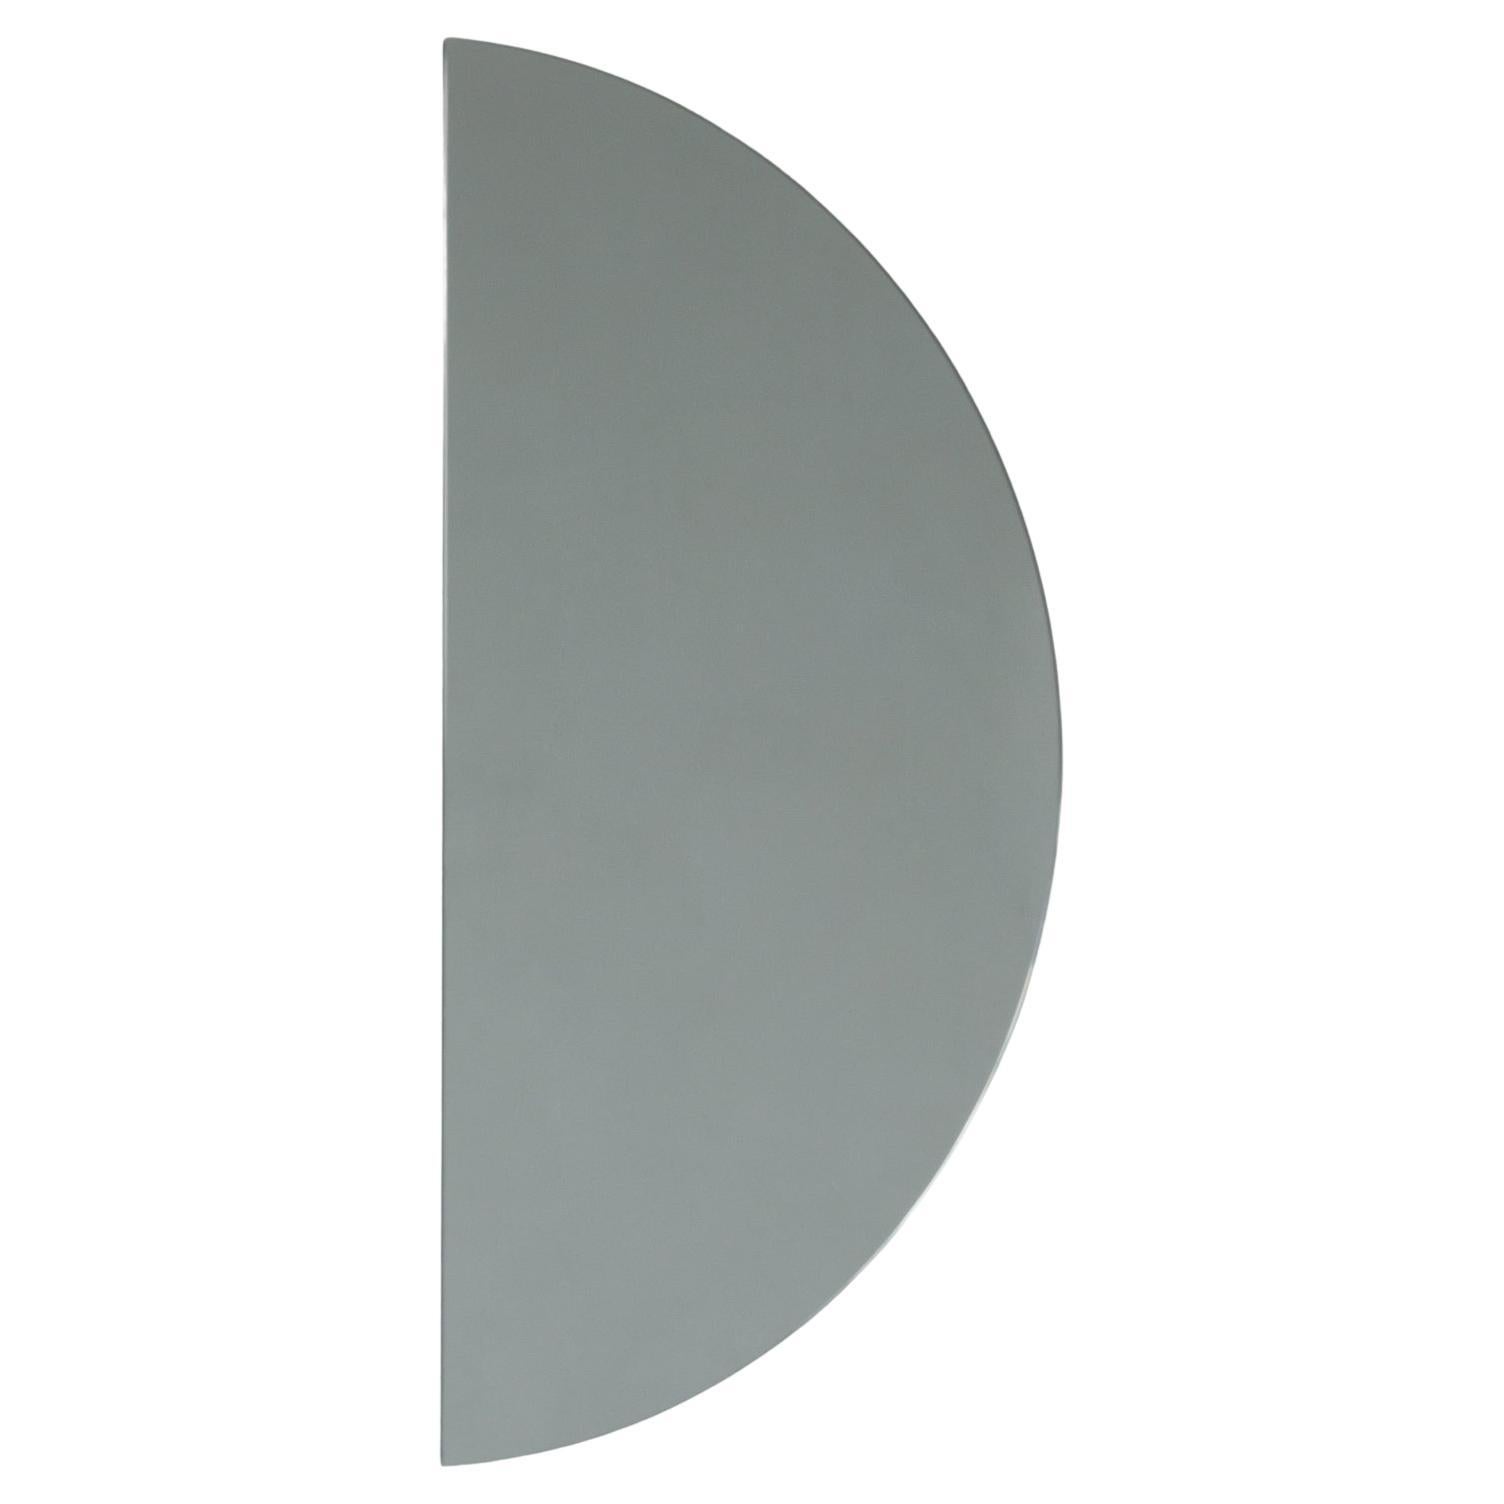 Luna Half-Moon Black Tinted Semi-circular Frameless Contemporary Mirror, XL (miroir contemporain semi-circulaire teinté)